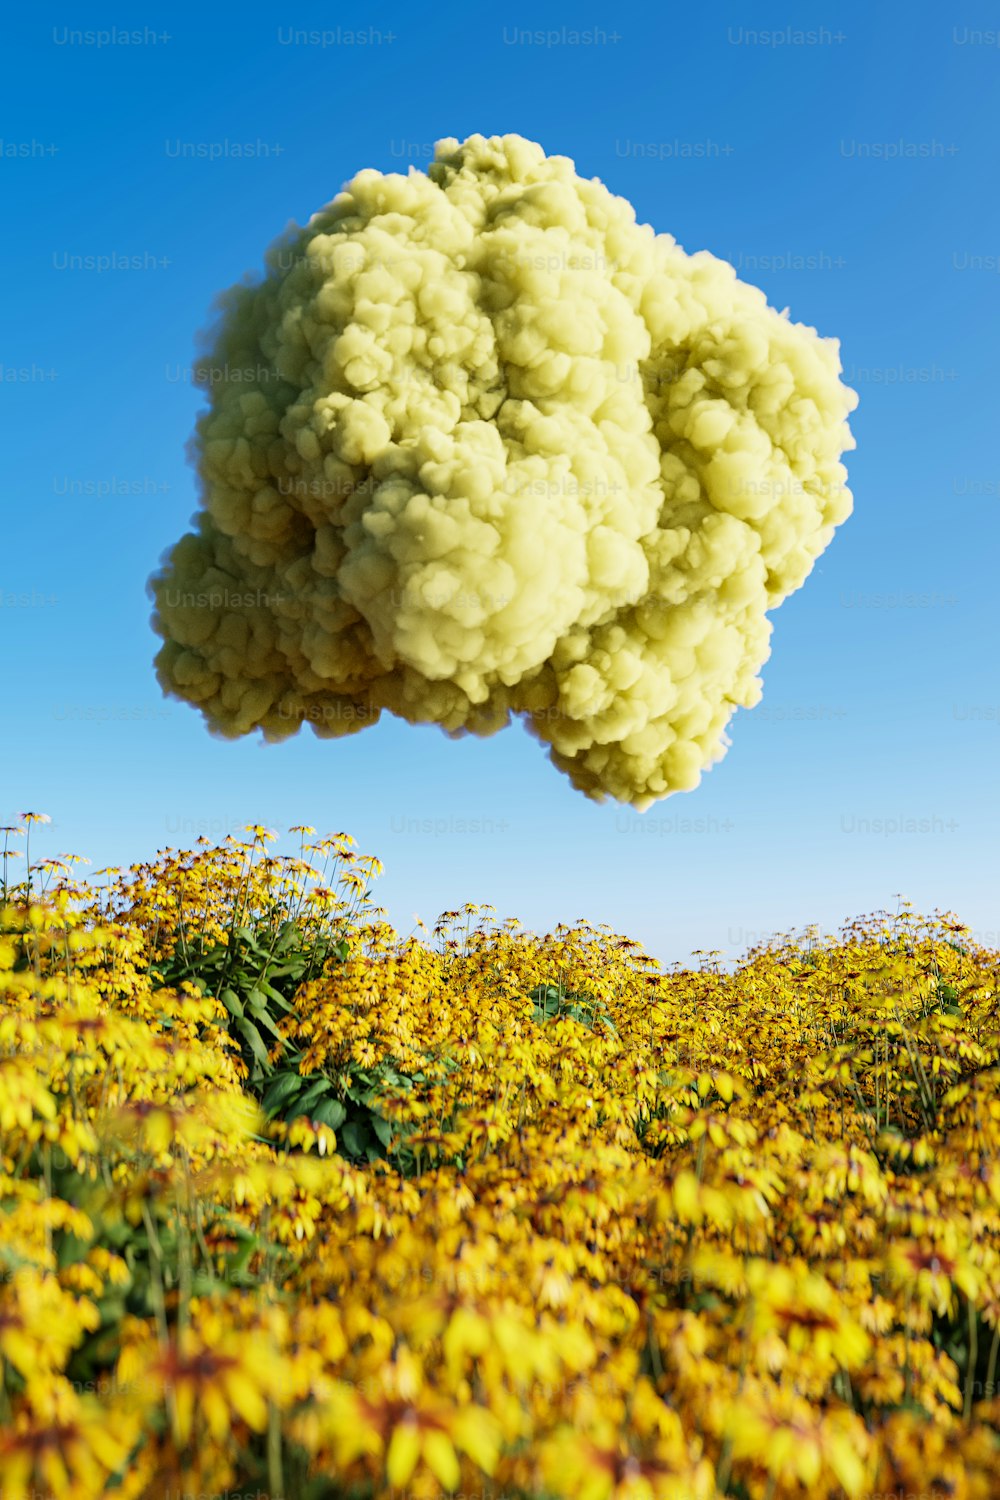 Eine Rauchwolke schwebt über einem Feld gelber Blumen